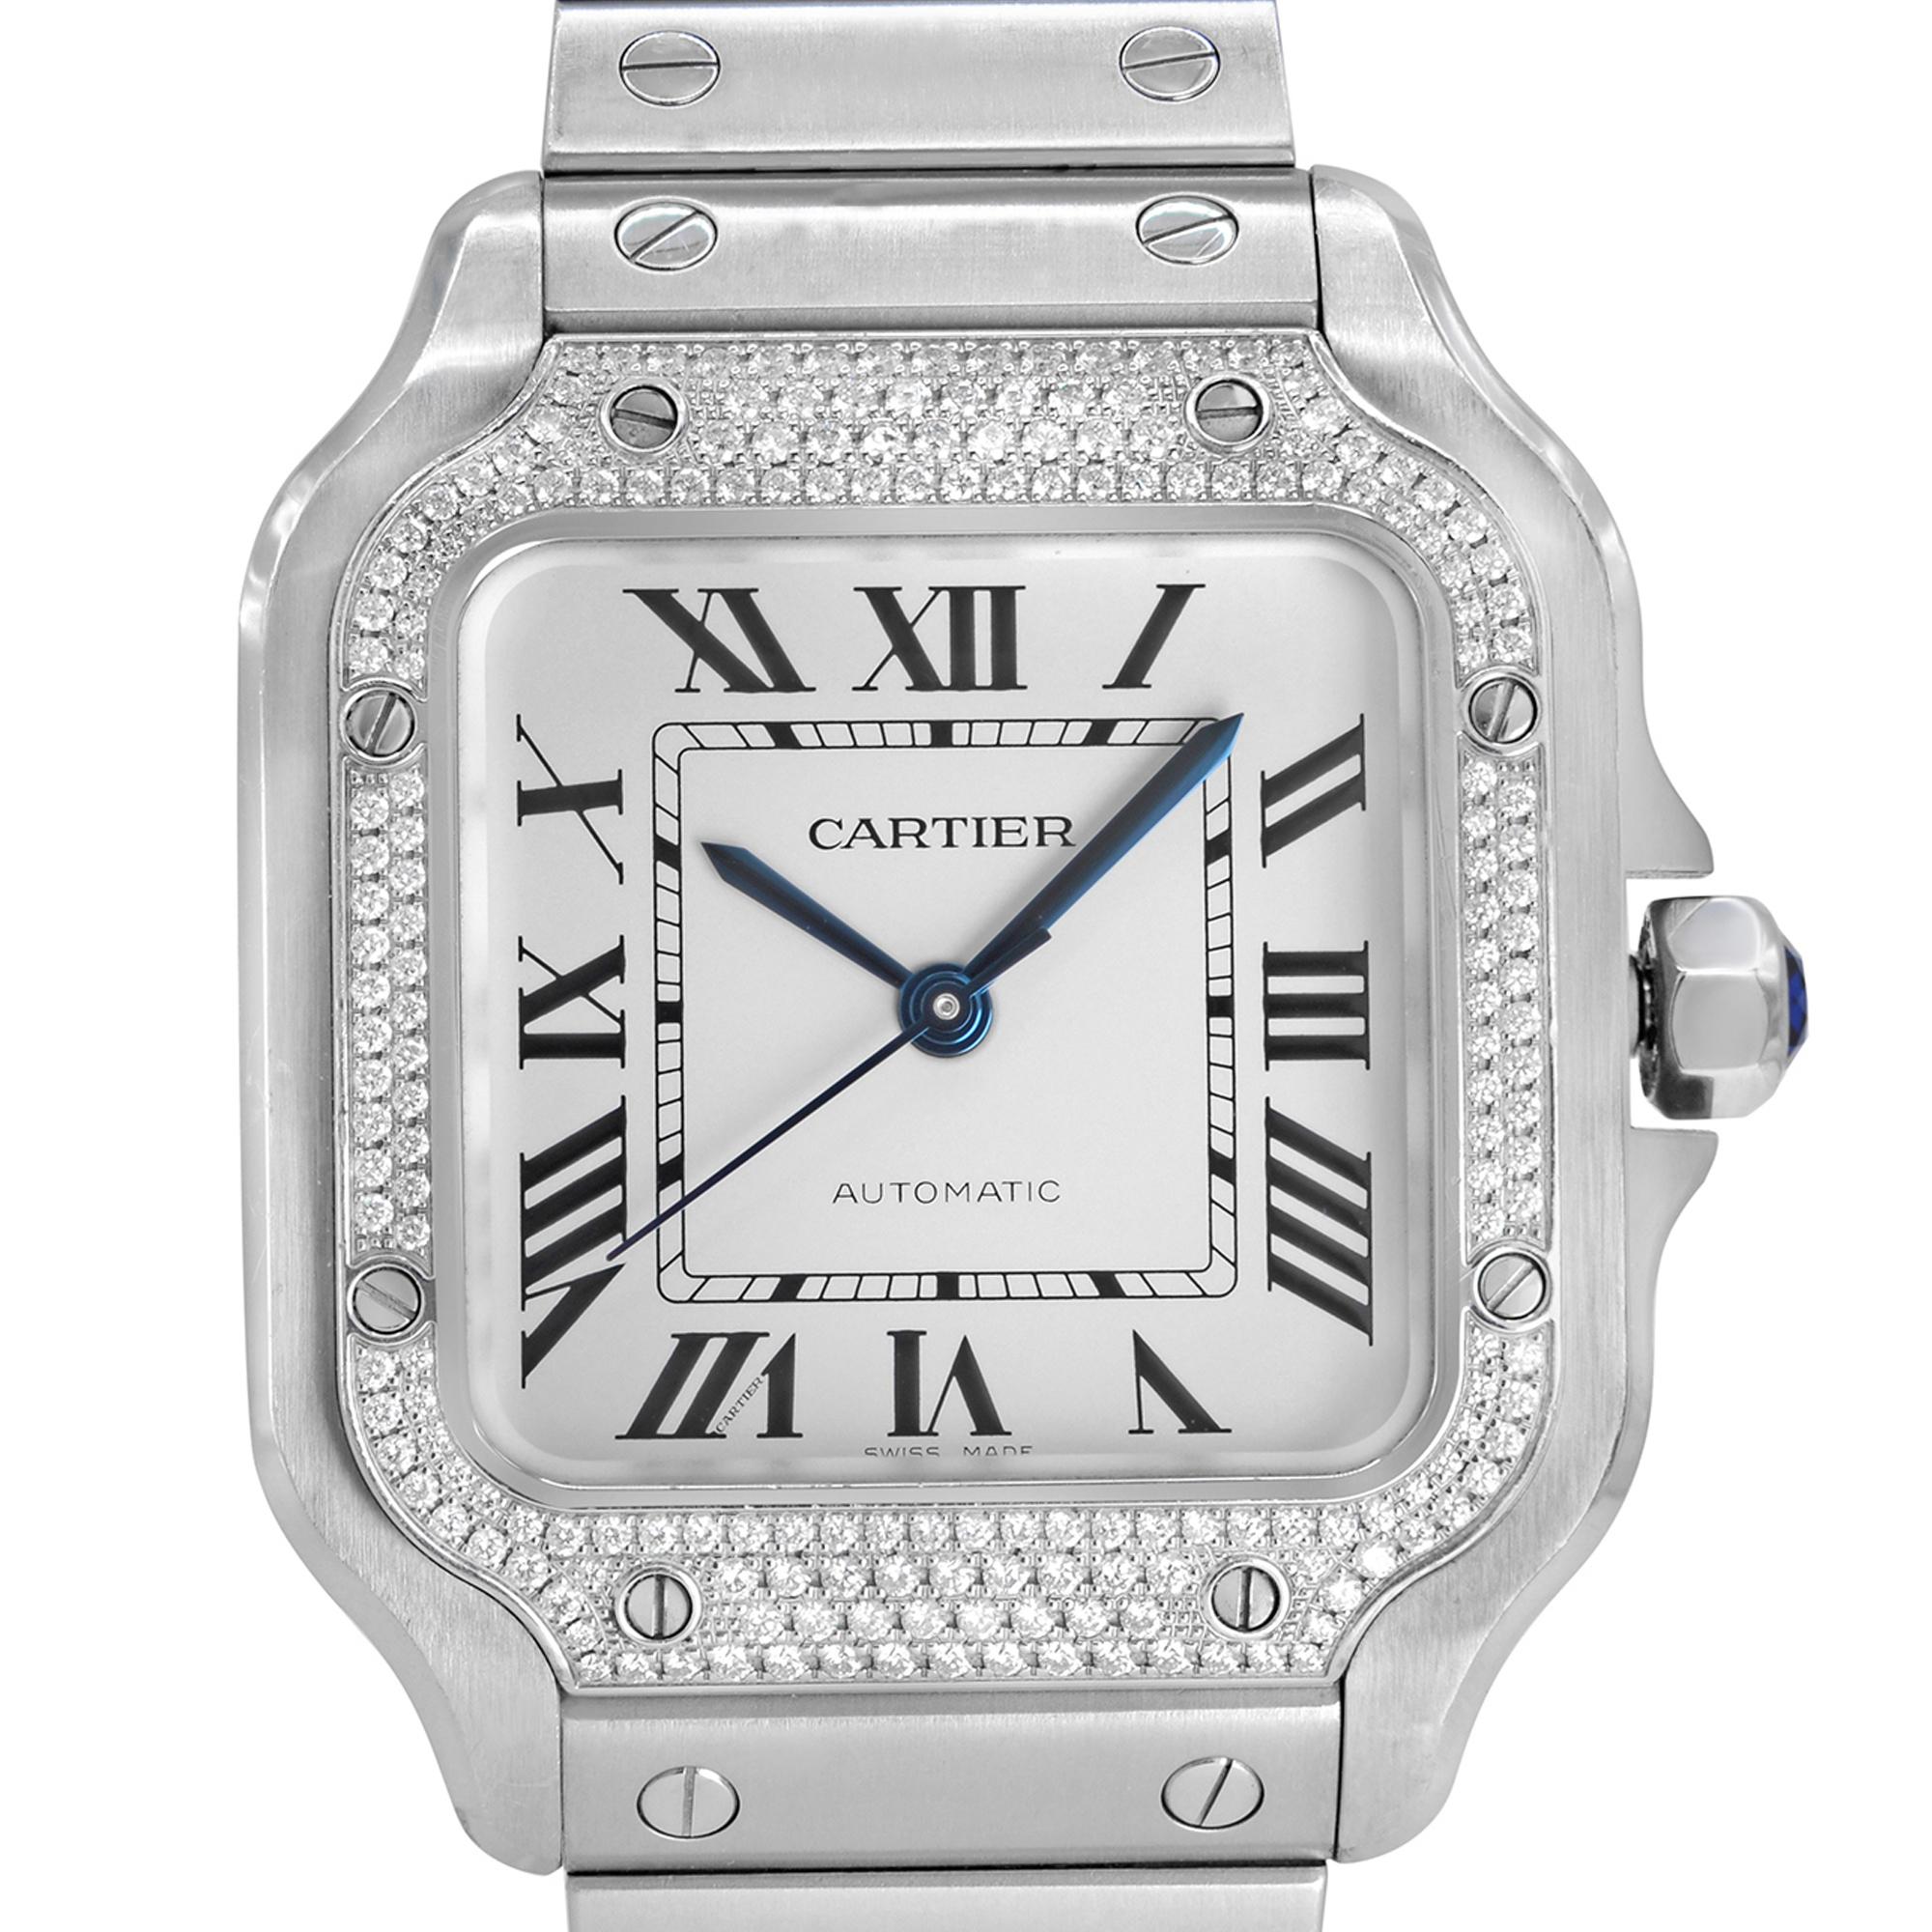 Anzeigemodell Cartier Santos 35mm Edelstahl Diamant Lünette Weißes Zifferblatt Automatik Damenuhr W4SA0005. Diese schöne Damenuhr wird von einem mechanischen Automatikwerk angetrieben und verfügt über: Edelstahlgehäuse, Diamantlünette mit